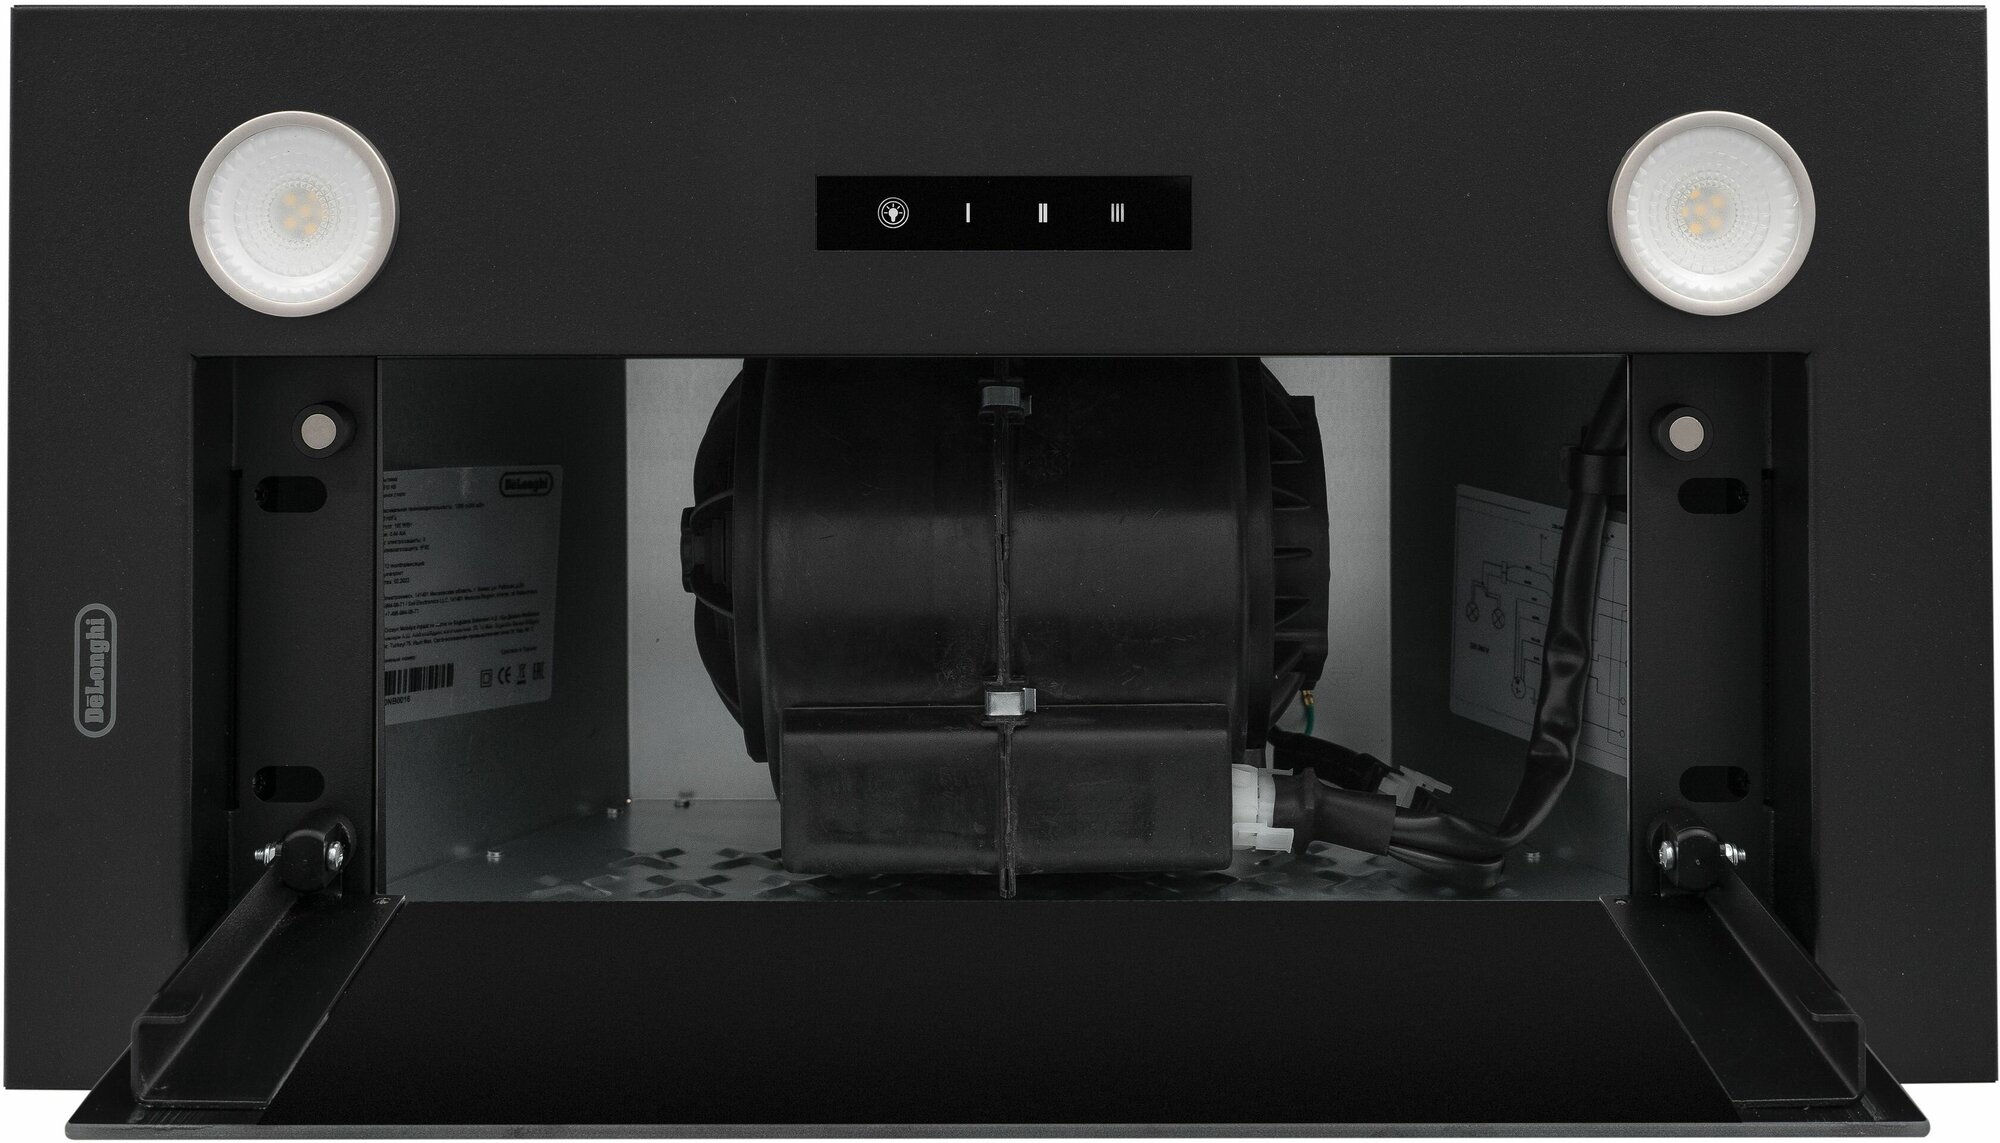 Кухонная вытяжка DeLonghi COSETTA 510 NB, полностью встраиваемая, 52 см, черная, 3 скорости, 1200 м3/ч, сенсорное управление - фотография № 8